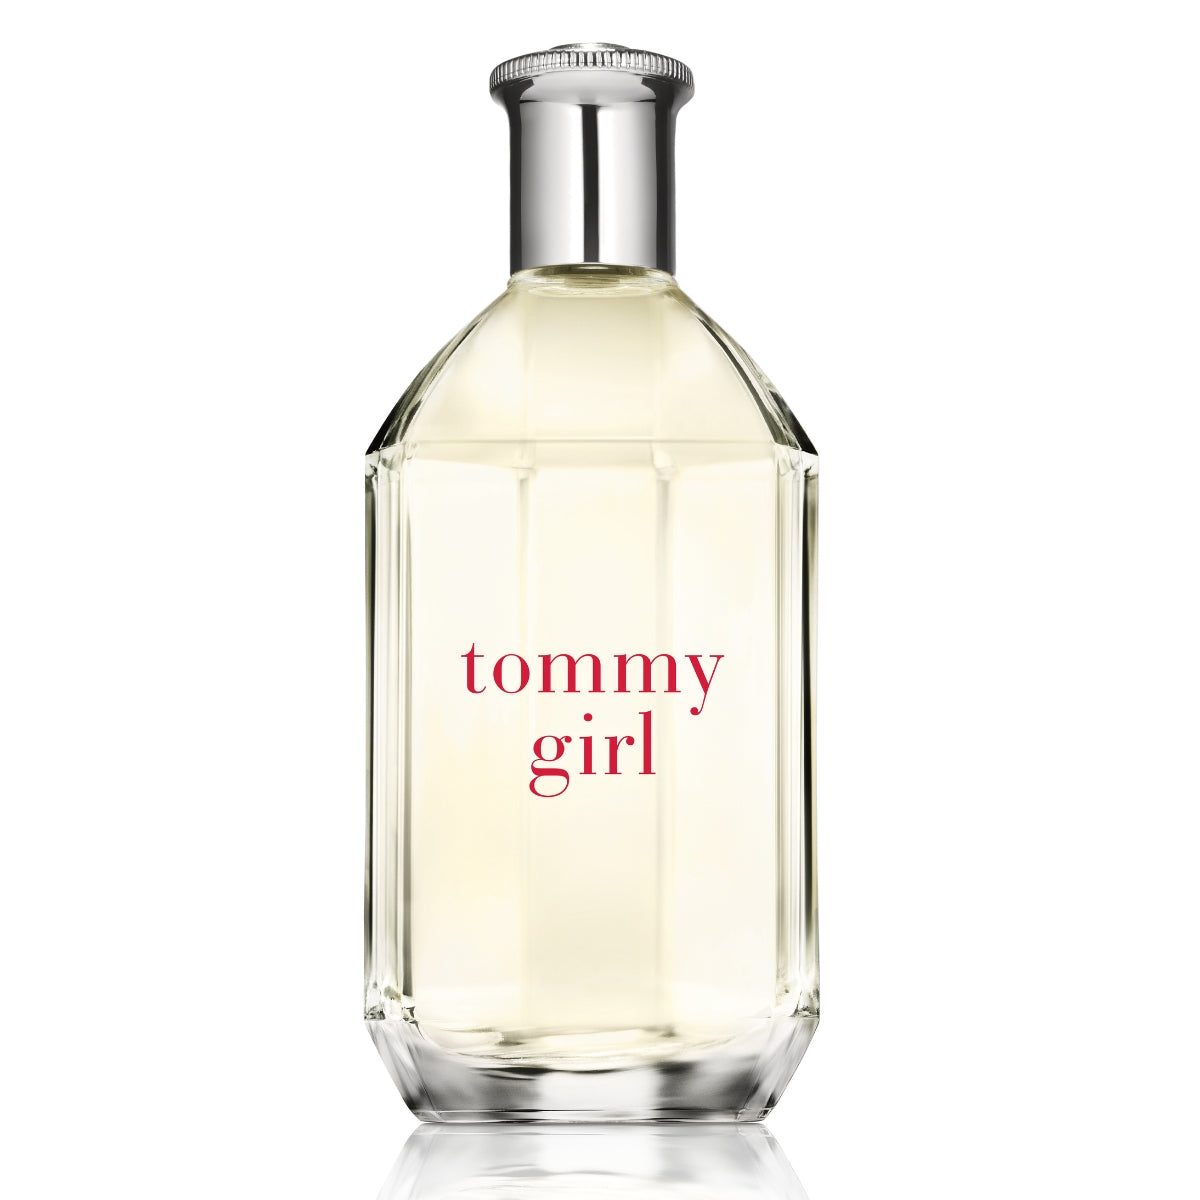 Tommy Girl Eau de Toilette